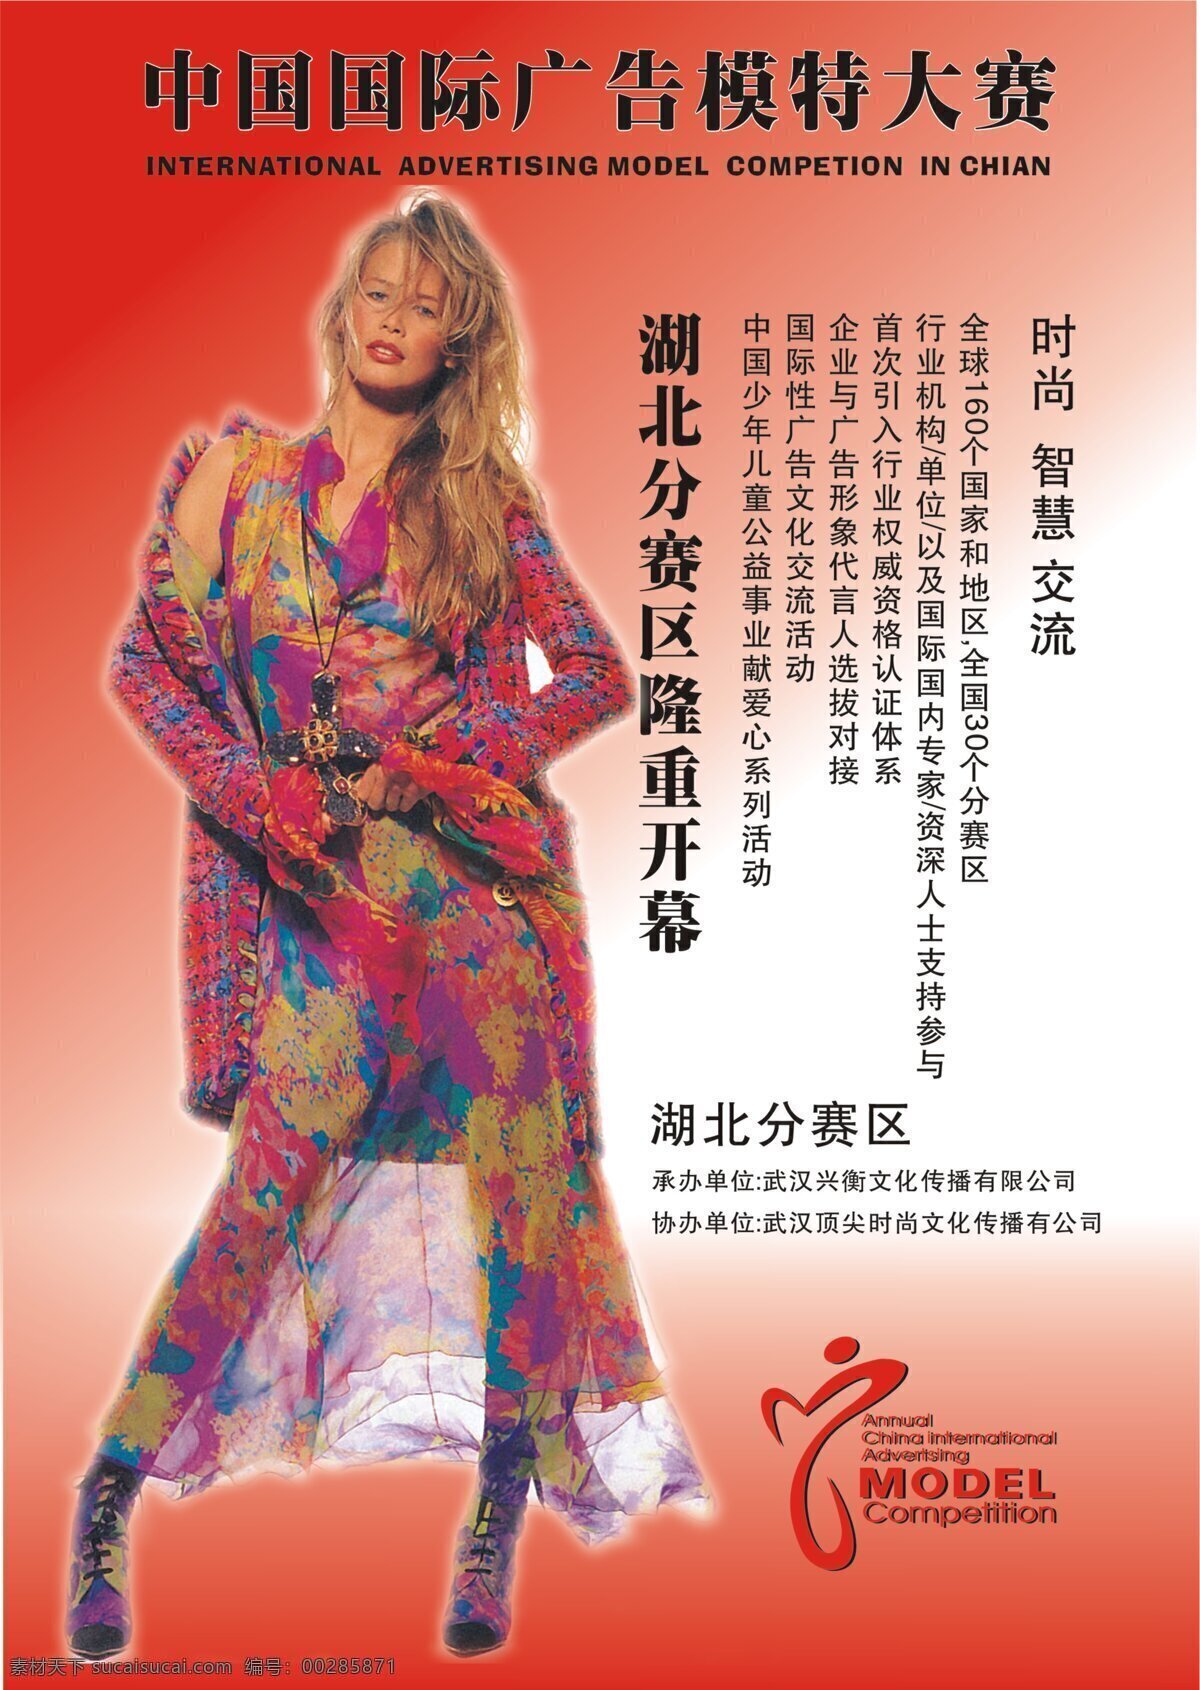 300 大赛海报 平面设计 设计图库 f 顶尖 时尚 2005 广告 模特大赛 海报 设计素材 模板下载